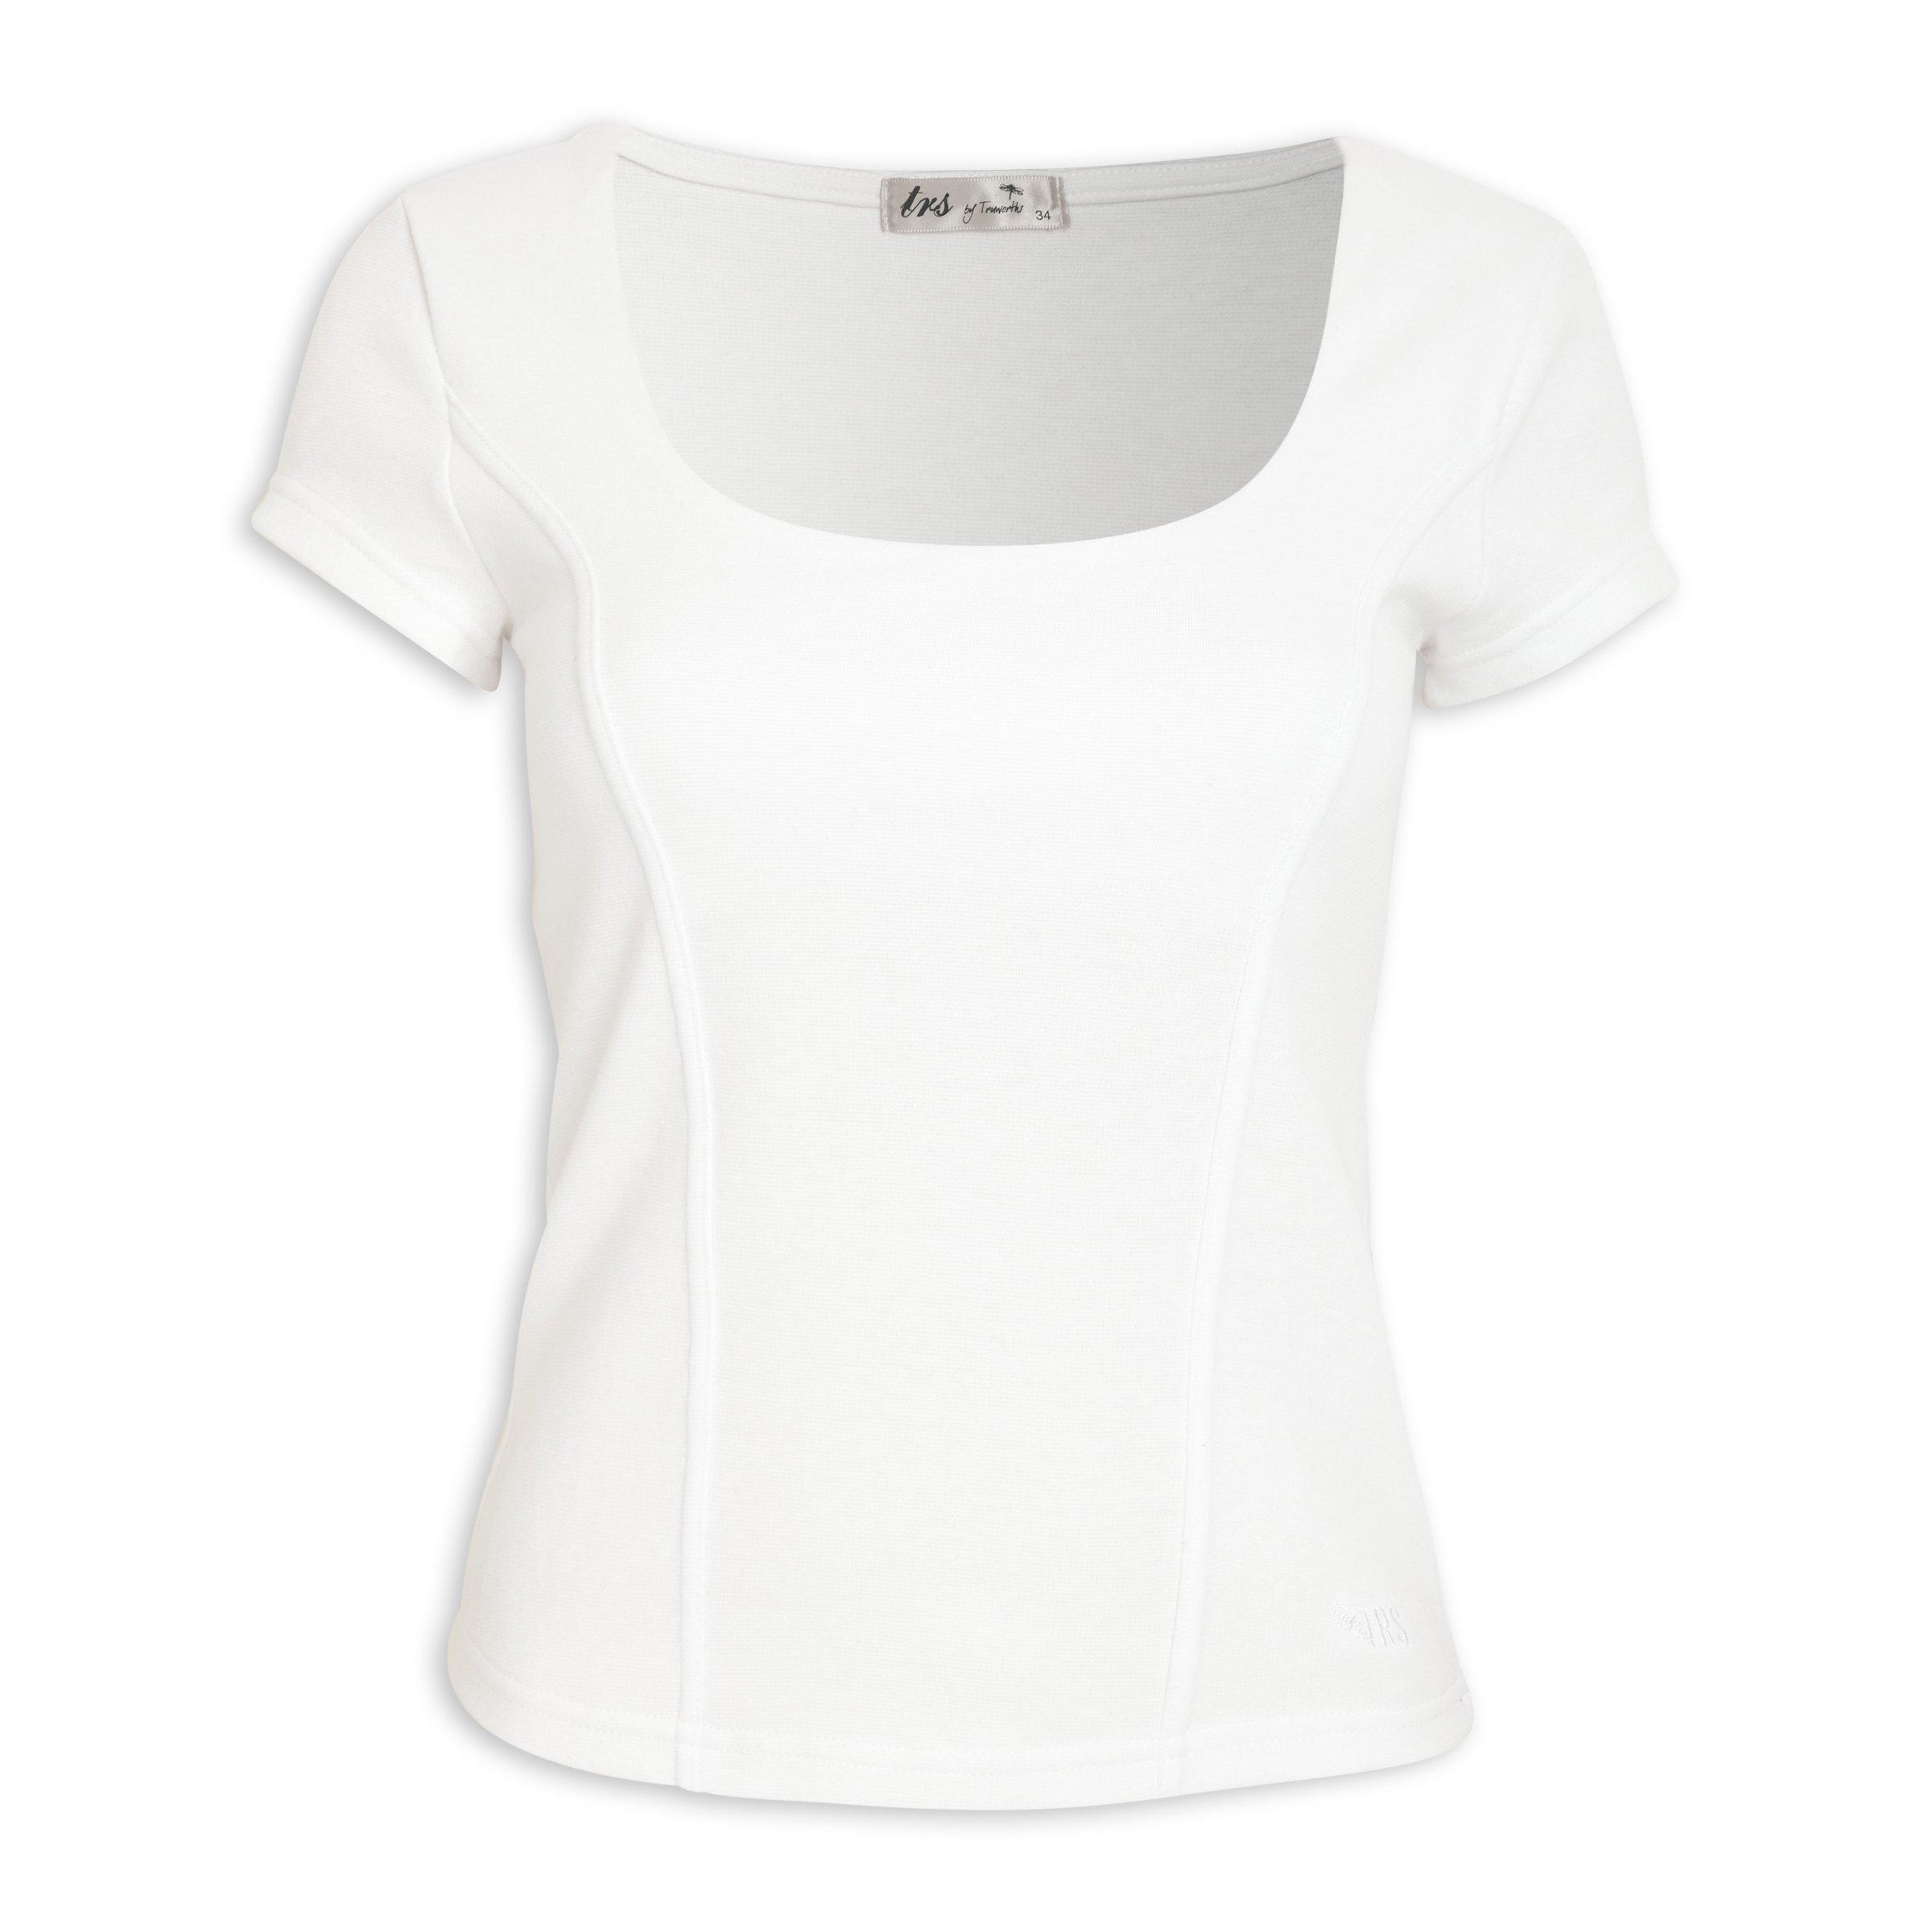 T-shirt Corset White